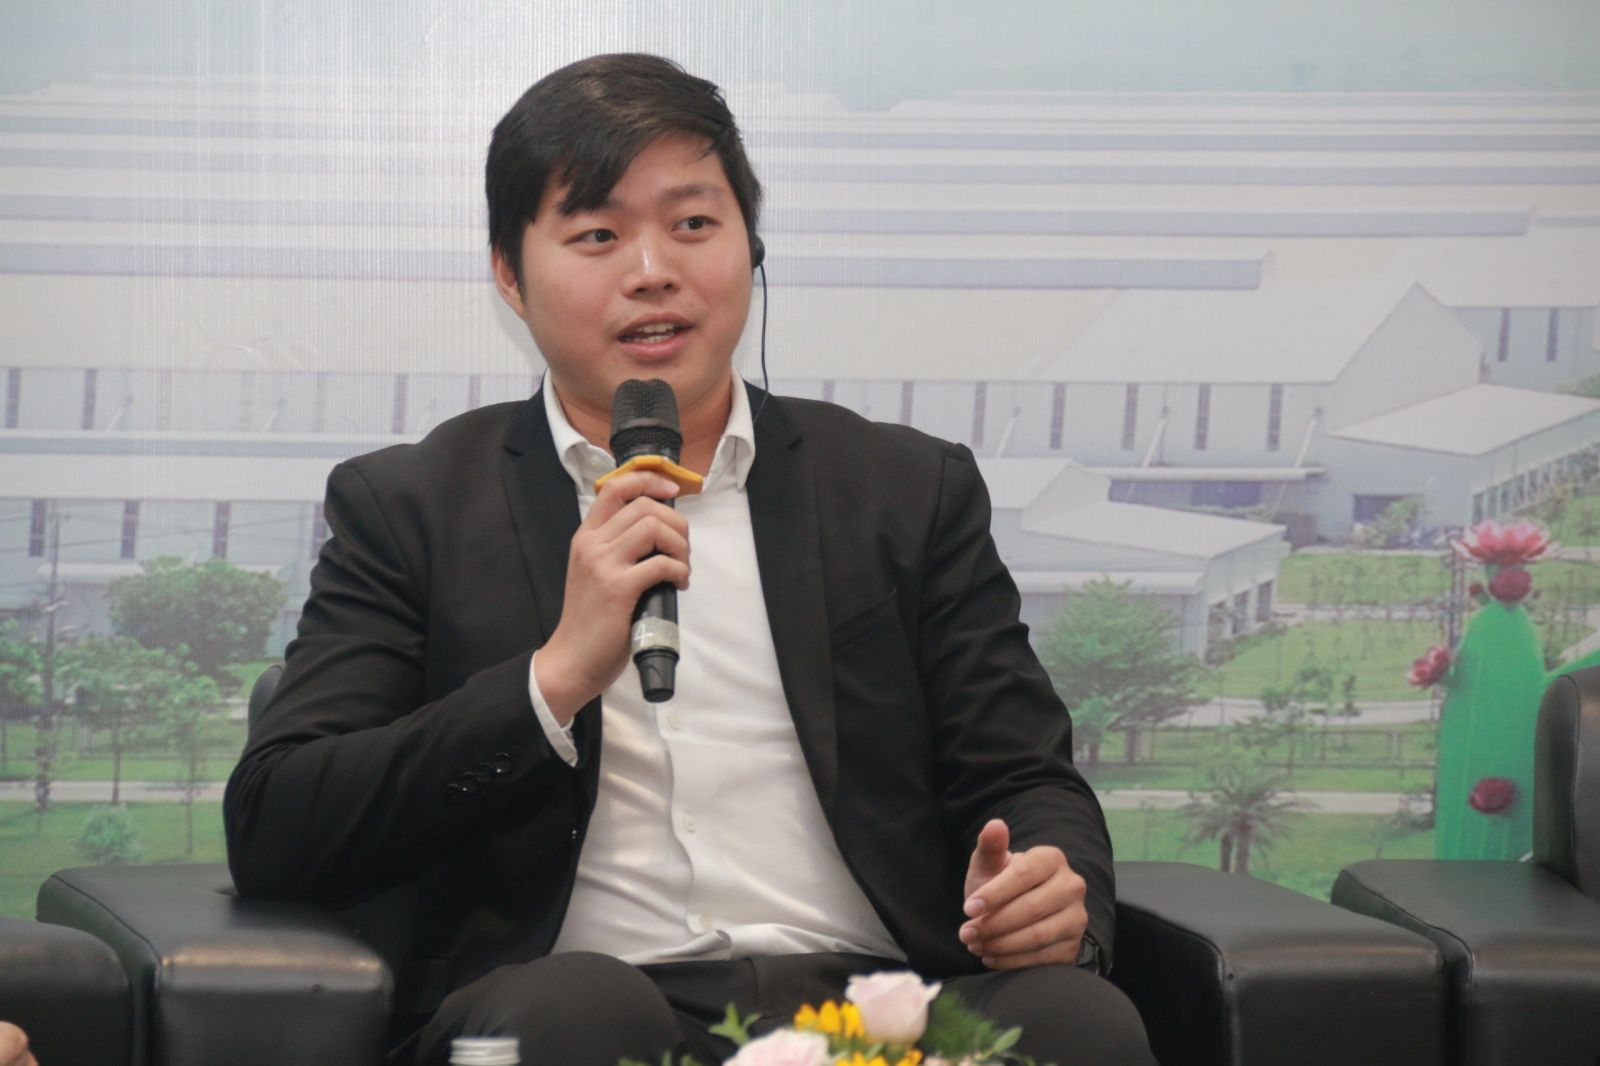 ông Jayren Teo - CEO mạng lưới điều hành khởi nghiệp Singapore